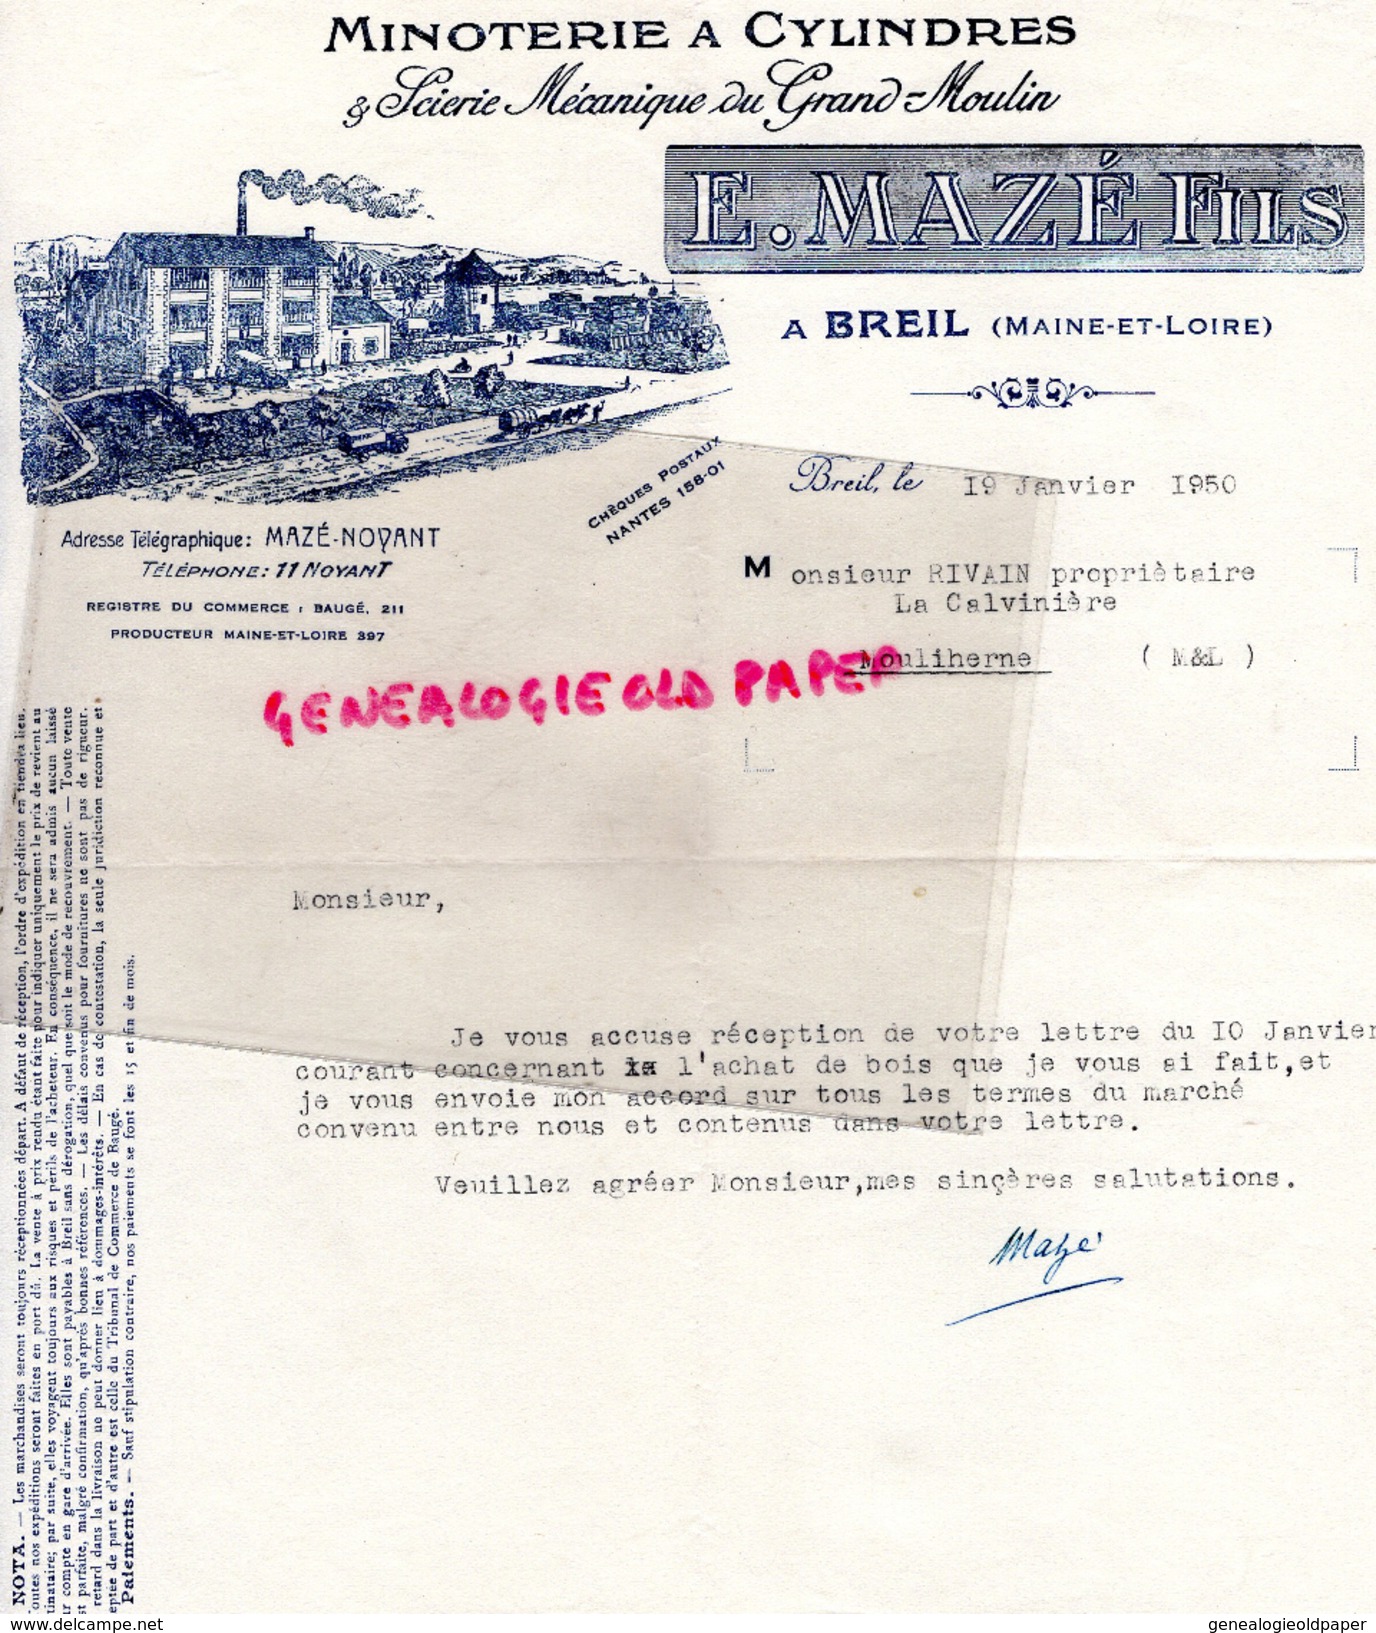 49 - BREIL- BELLE FACTURE E. MAZE FILS- MINOTERIE A CYLINDRES-SCIERIE MECANIQUE DU GRAND MOULIN-1950 - 1950 - ...